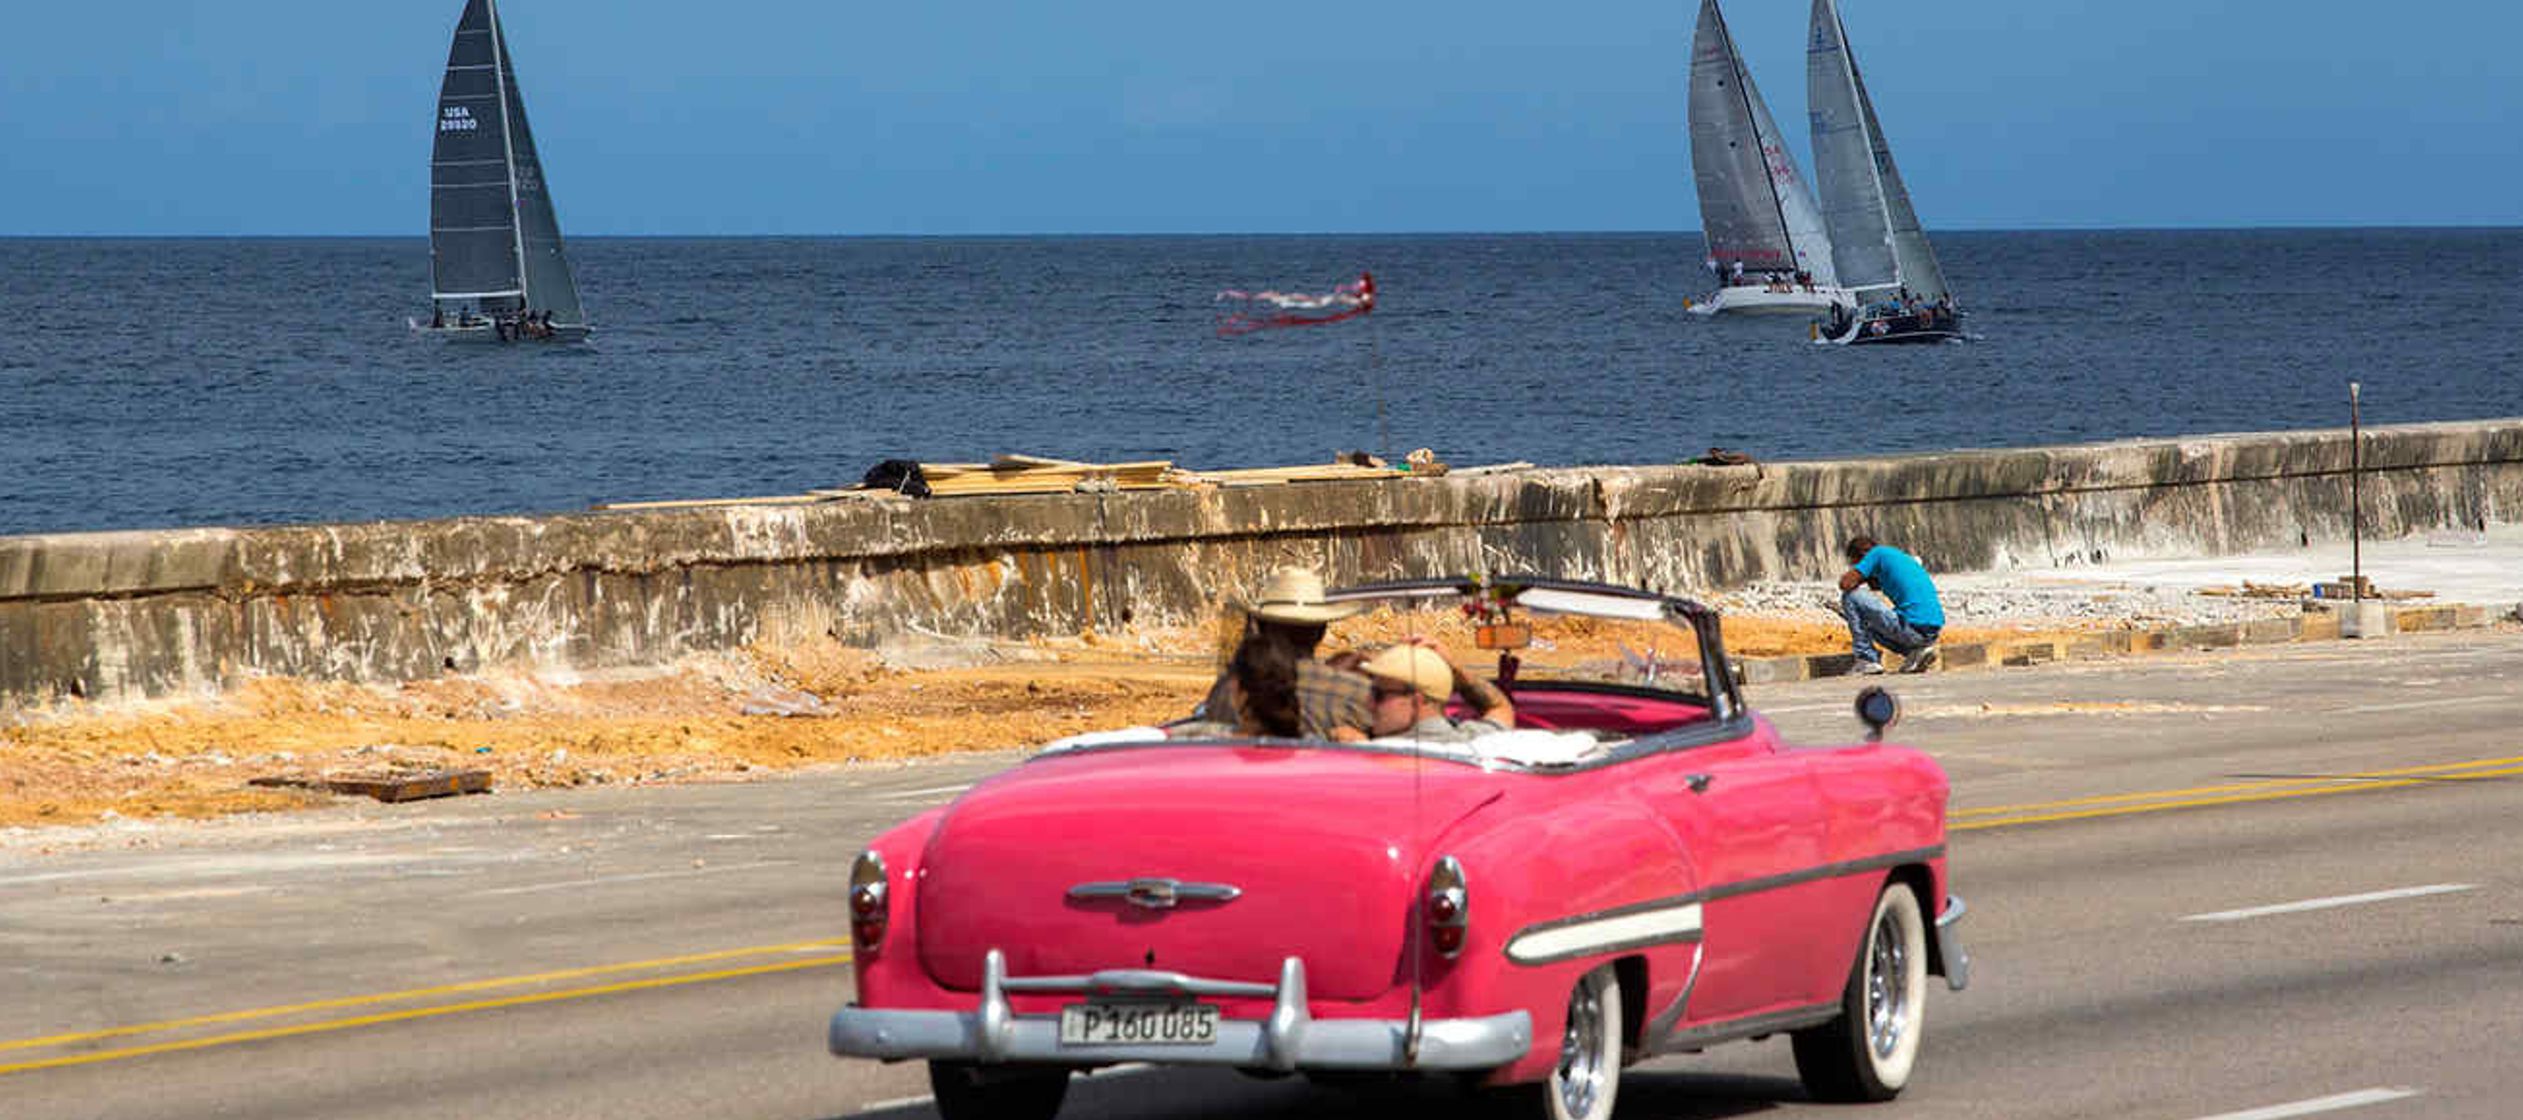 Cuba recibió 2.505,874 millones de viajeros entre enero y junio de 2018, 152.354 visitas...